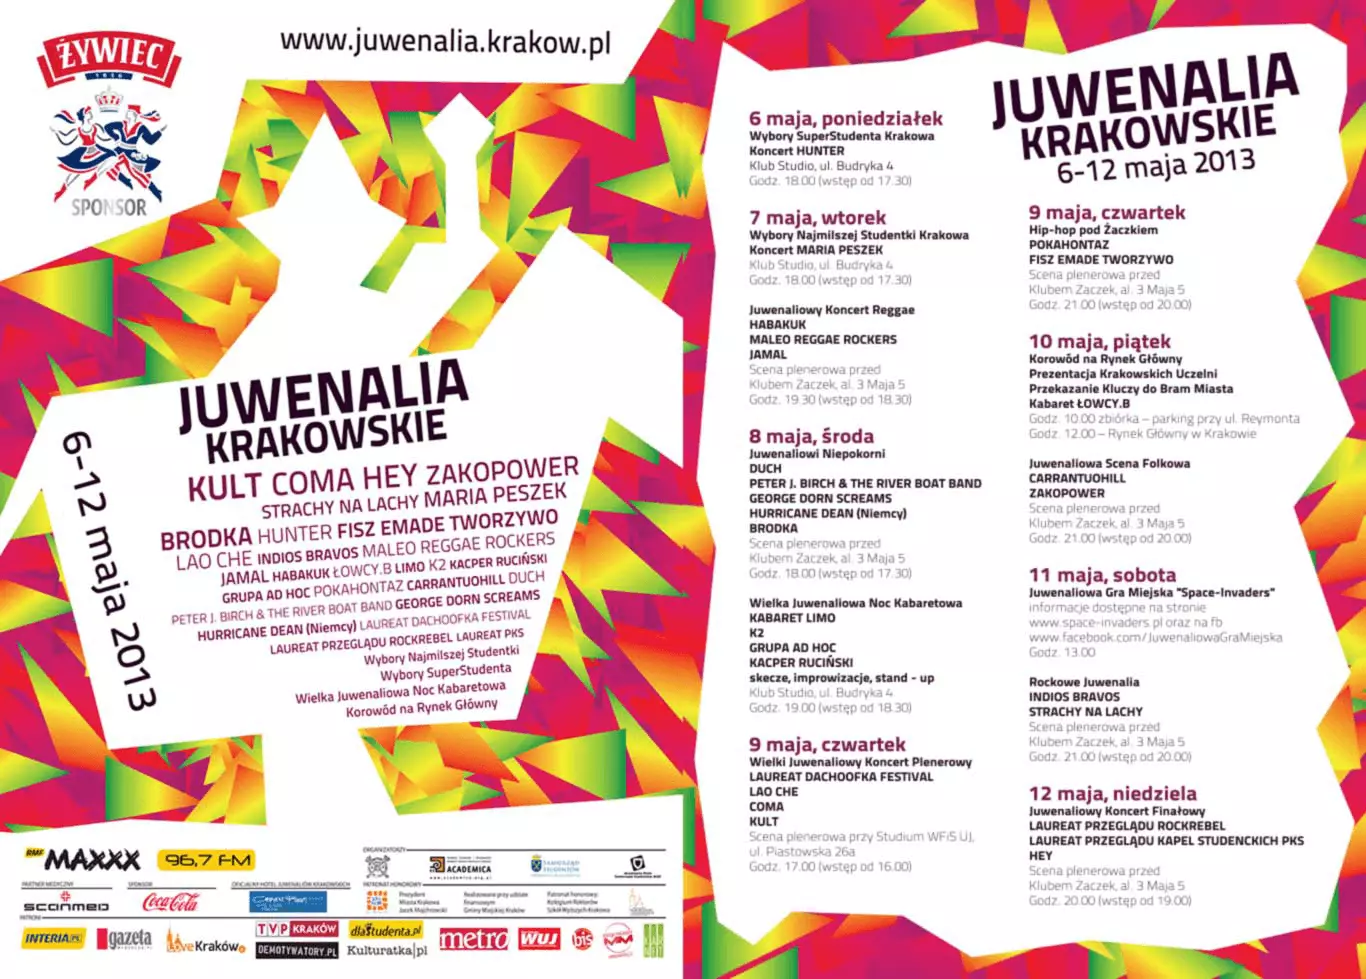 Juwenalia Krakowskie 2013